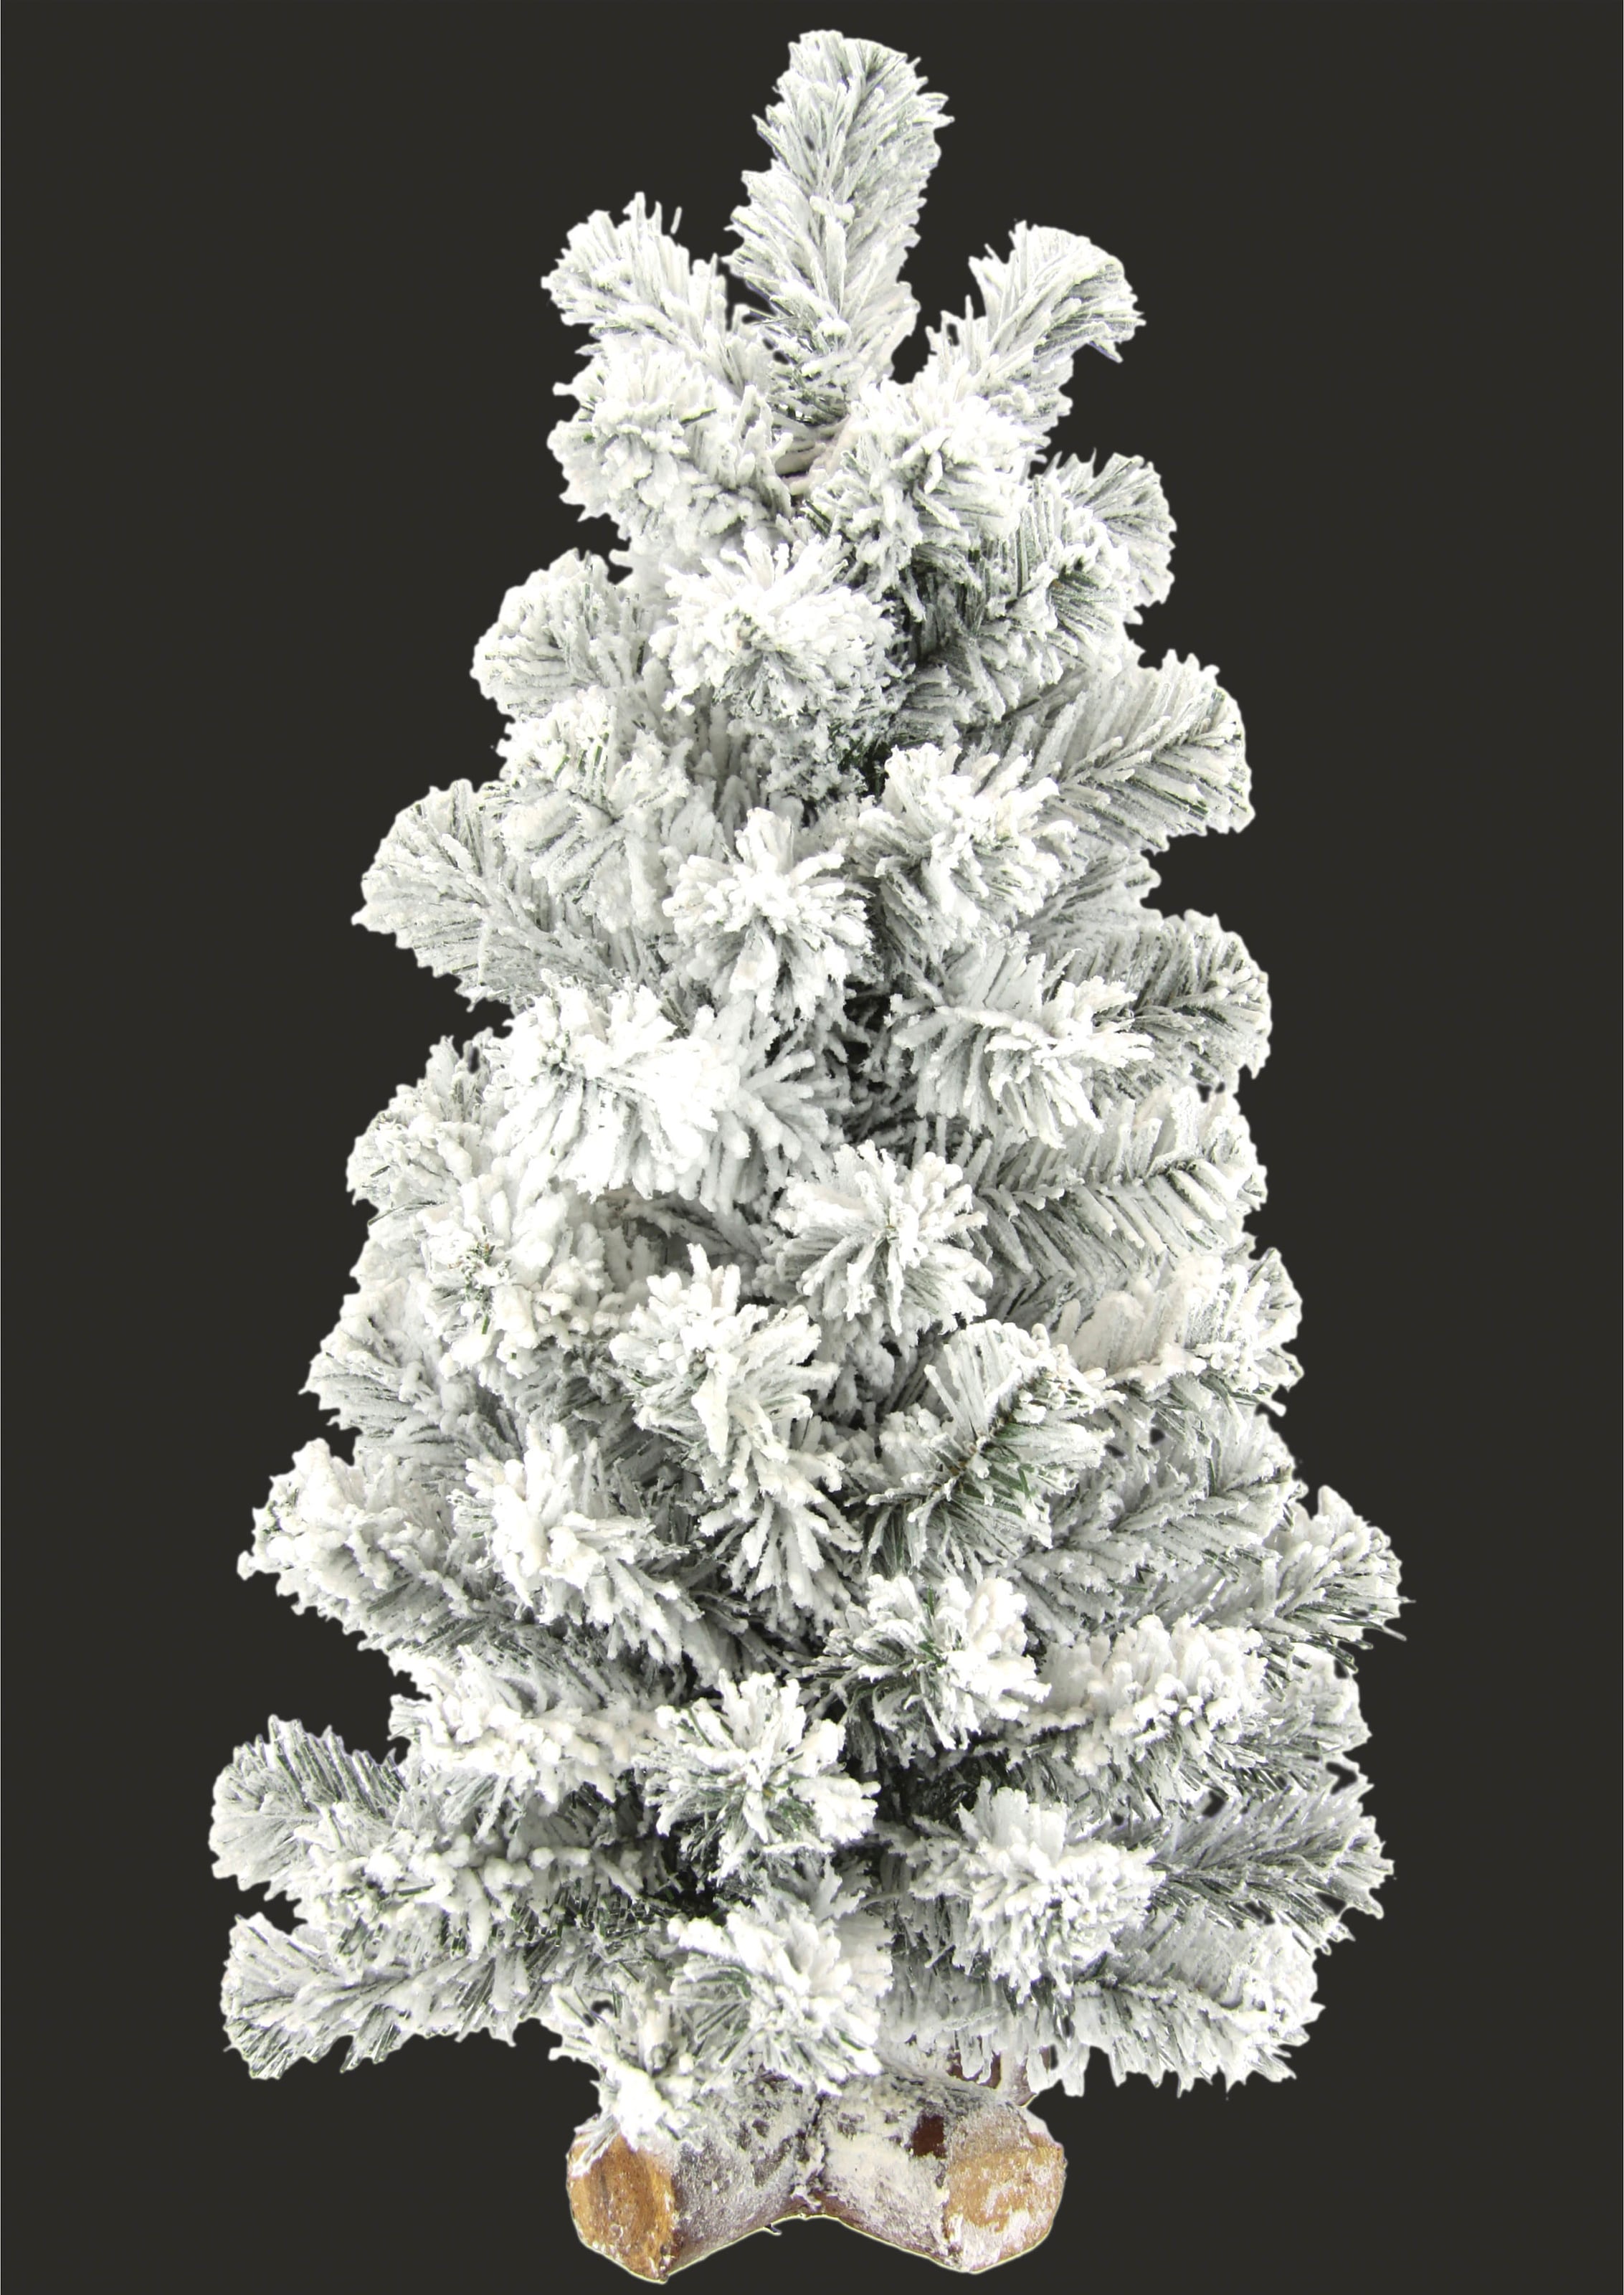 I.GE.A. Dekobaum »Weihnachtsdeko, Weihnachtsbaum«, Tannenbaum auf Holzfuß mit Kunstschnee 60 cm